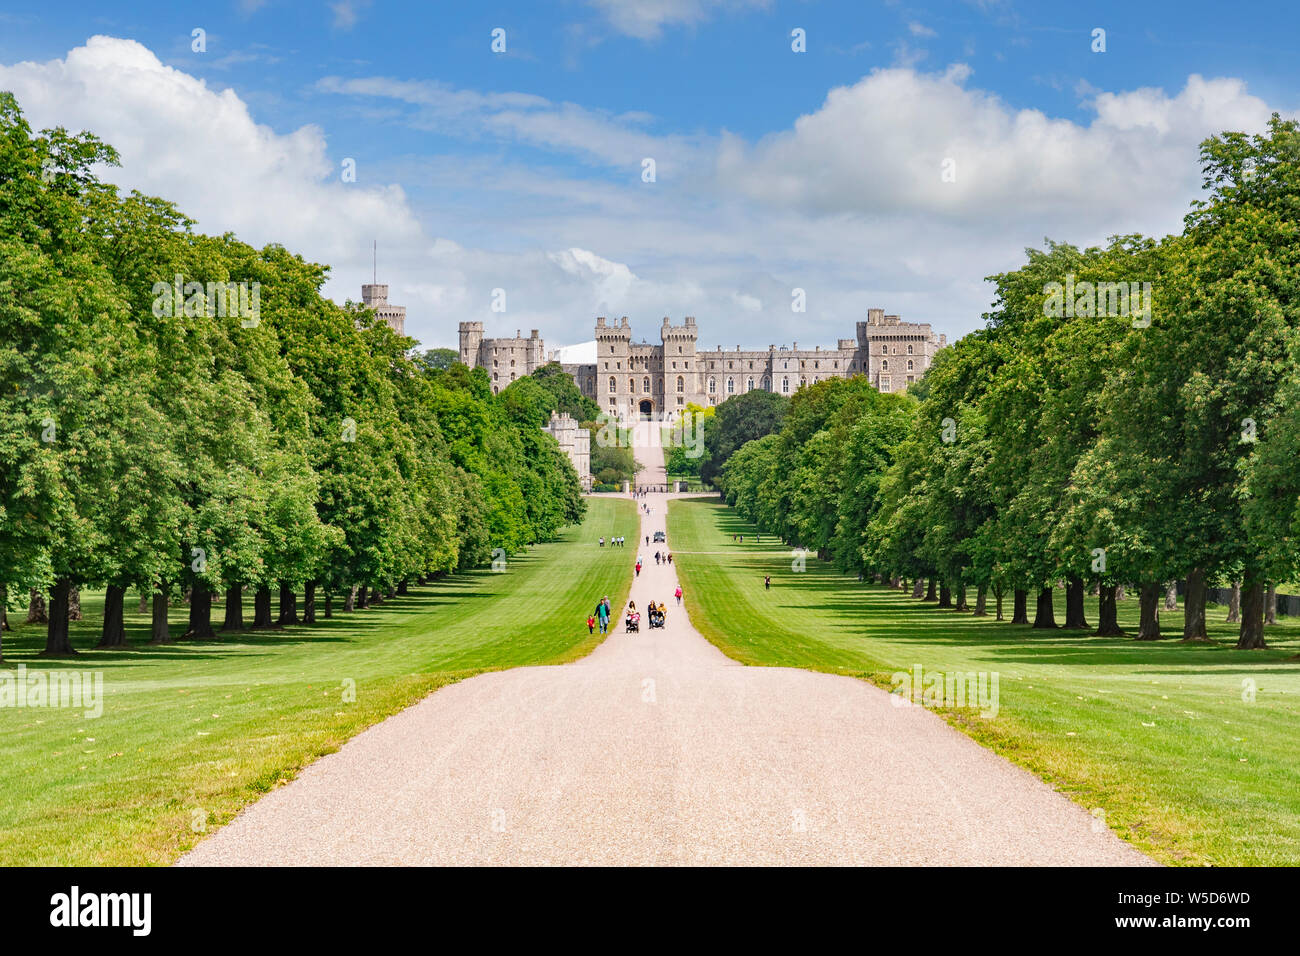 5 juin 2019 : Windsor, Berkshire, Royaume-Uni - La longue marche de Windsor Great Park et château de Windsor. Banque D'Images